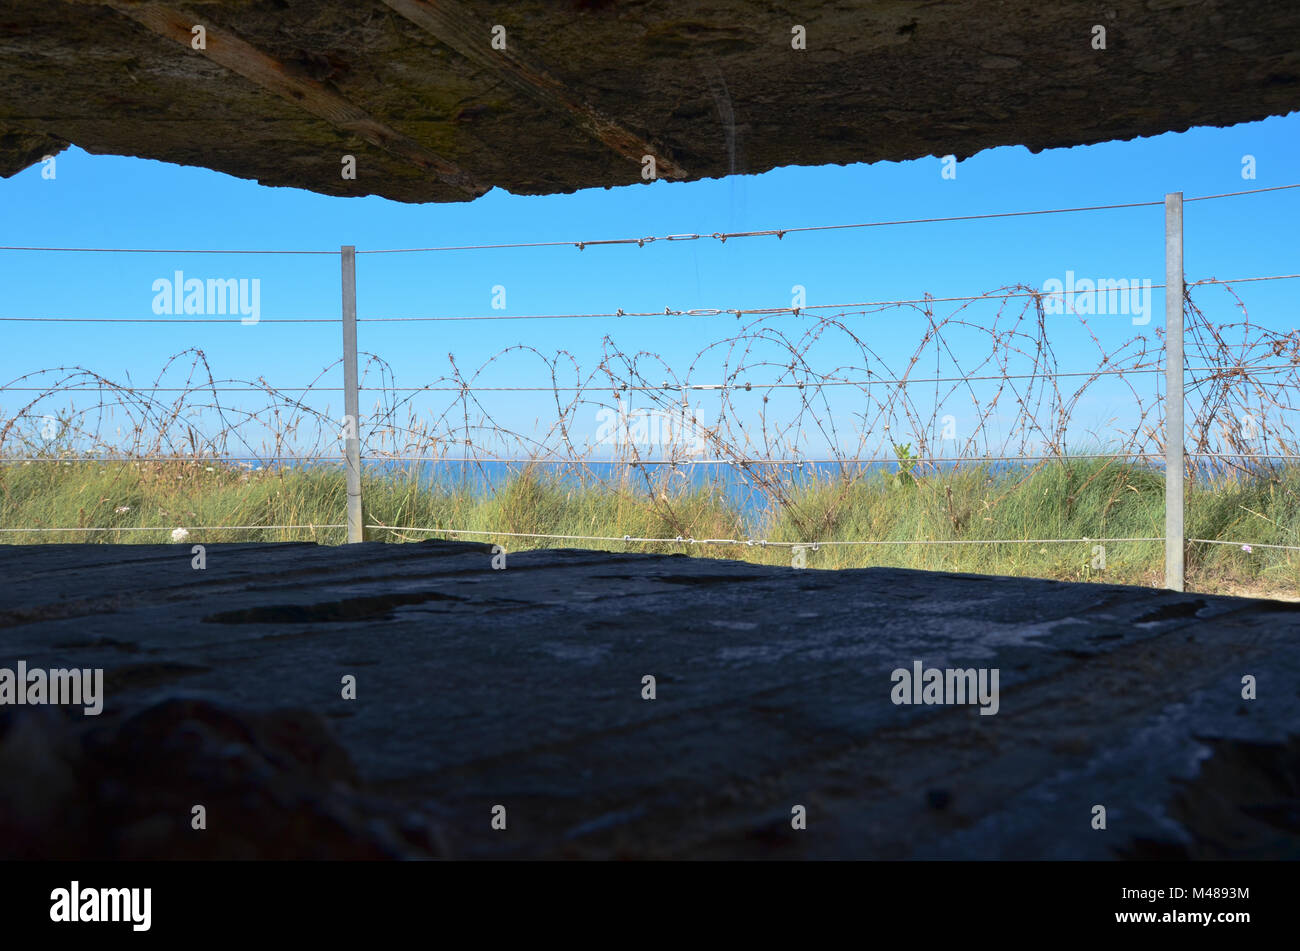 Mit Blick auf das Meer von der Innenseite der alten Welt Krieg 2 Klippe artilleriegeschützen Bunker oben Omaha Beach, Normandie, Frankreich - 17. Juli 2016. Keine Menschen. Stockfoto